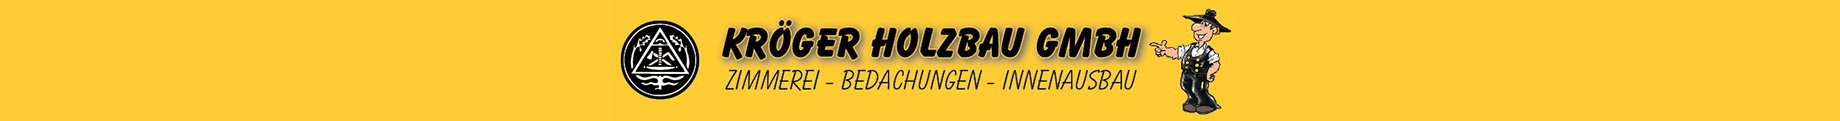 (c) Kroeger-holzbau.de